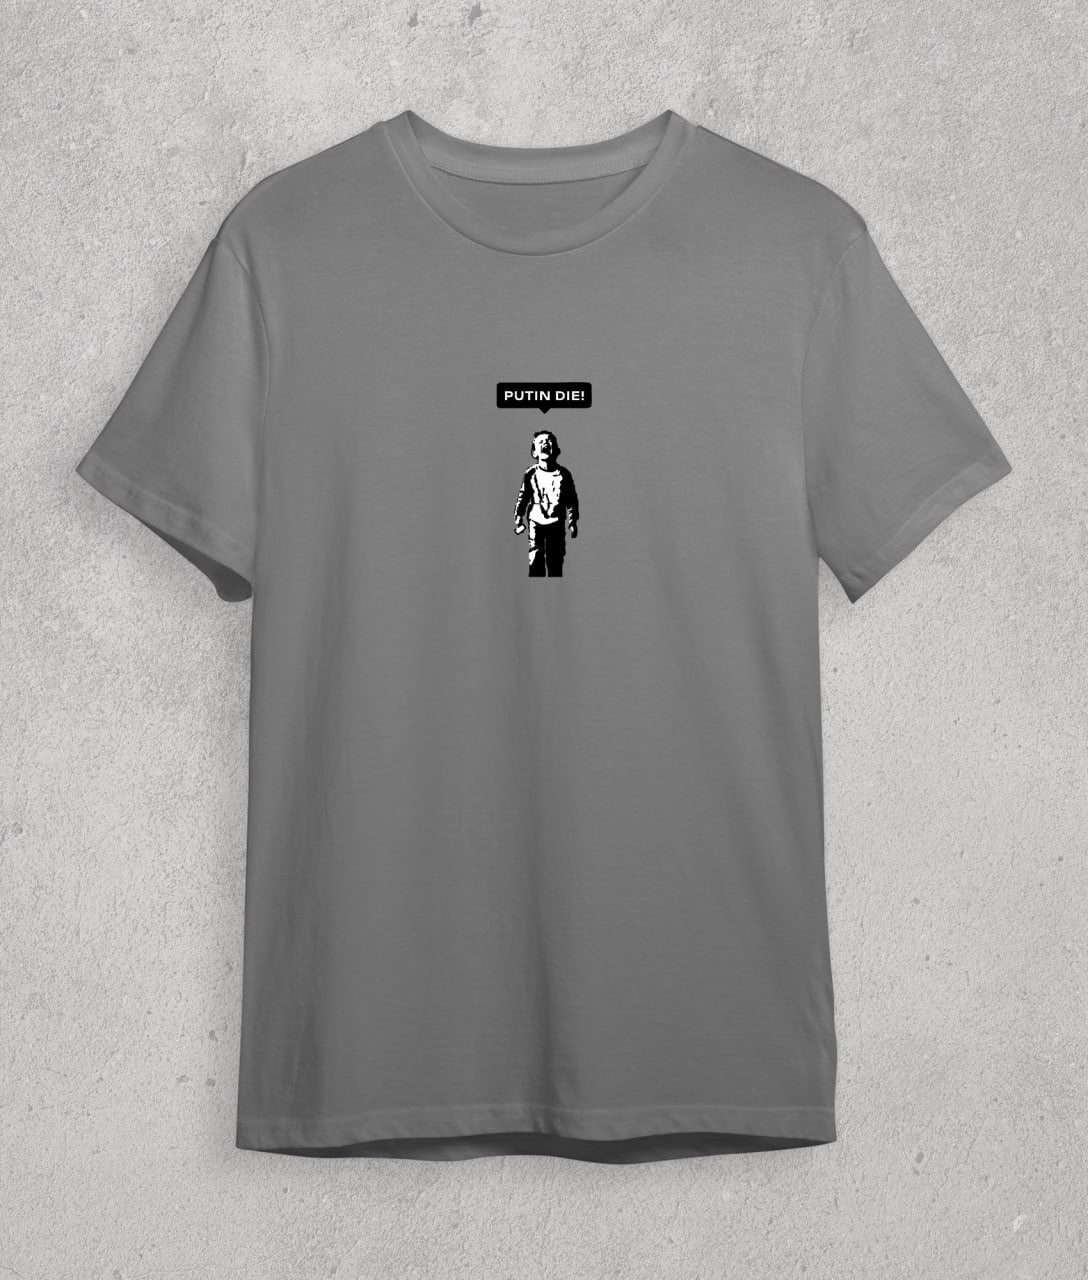 T-shirt "putin die" (Banksy)